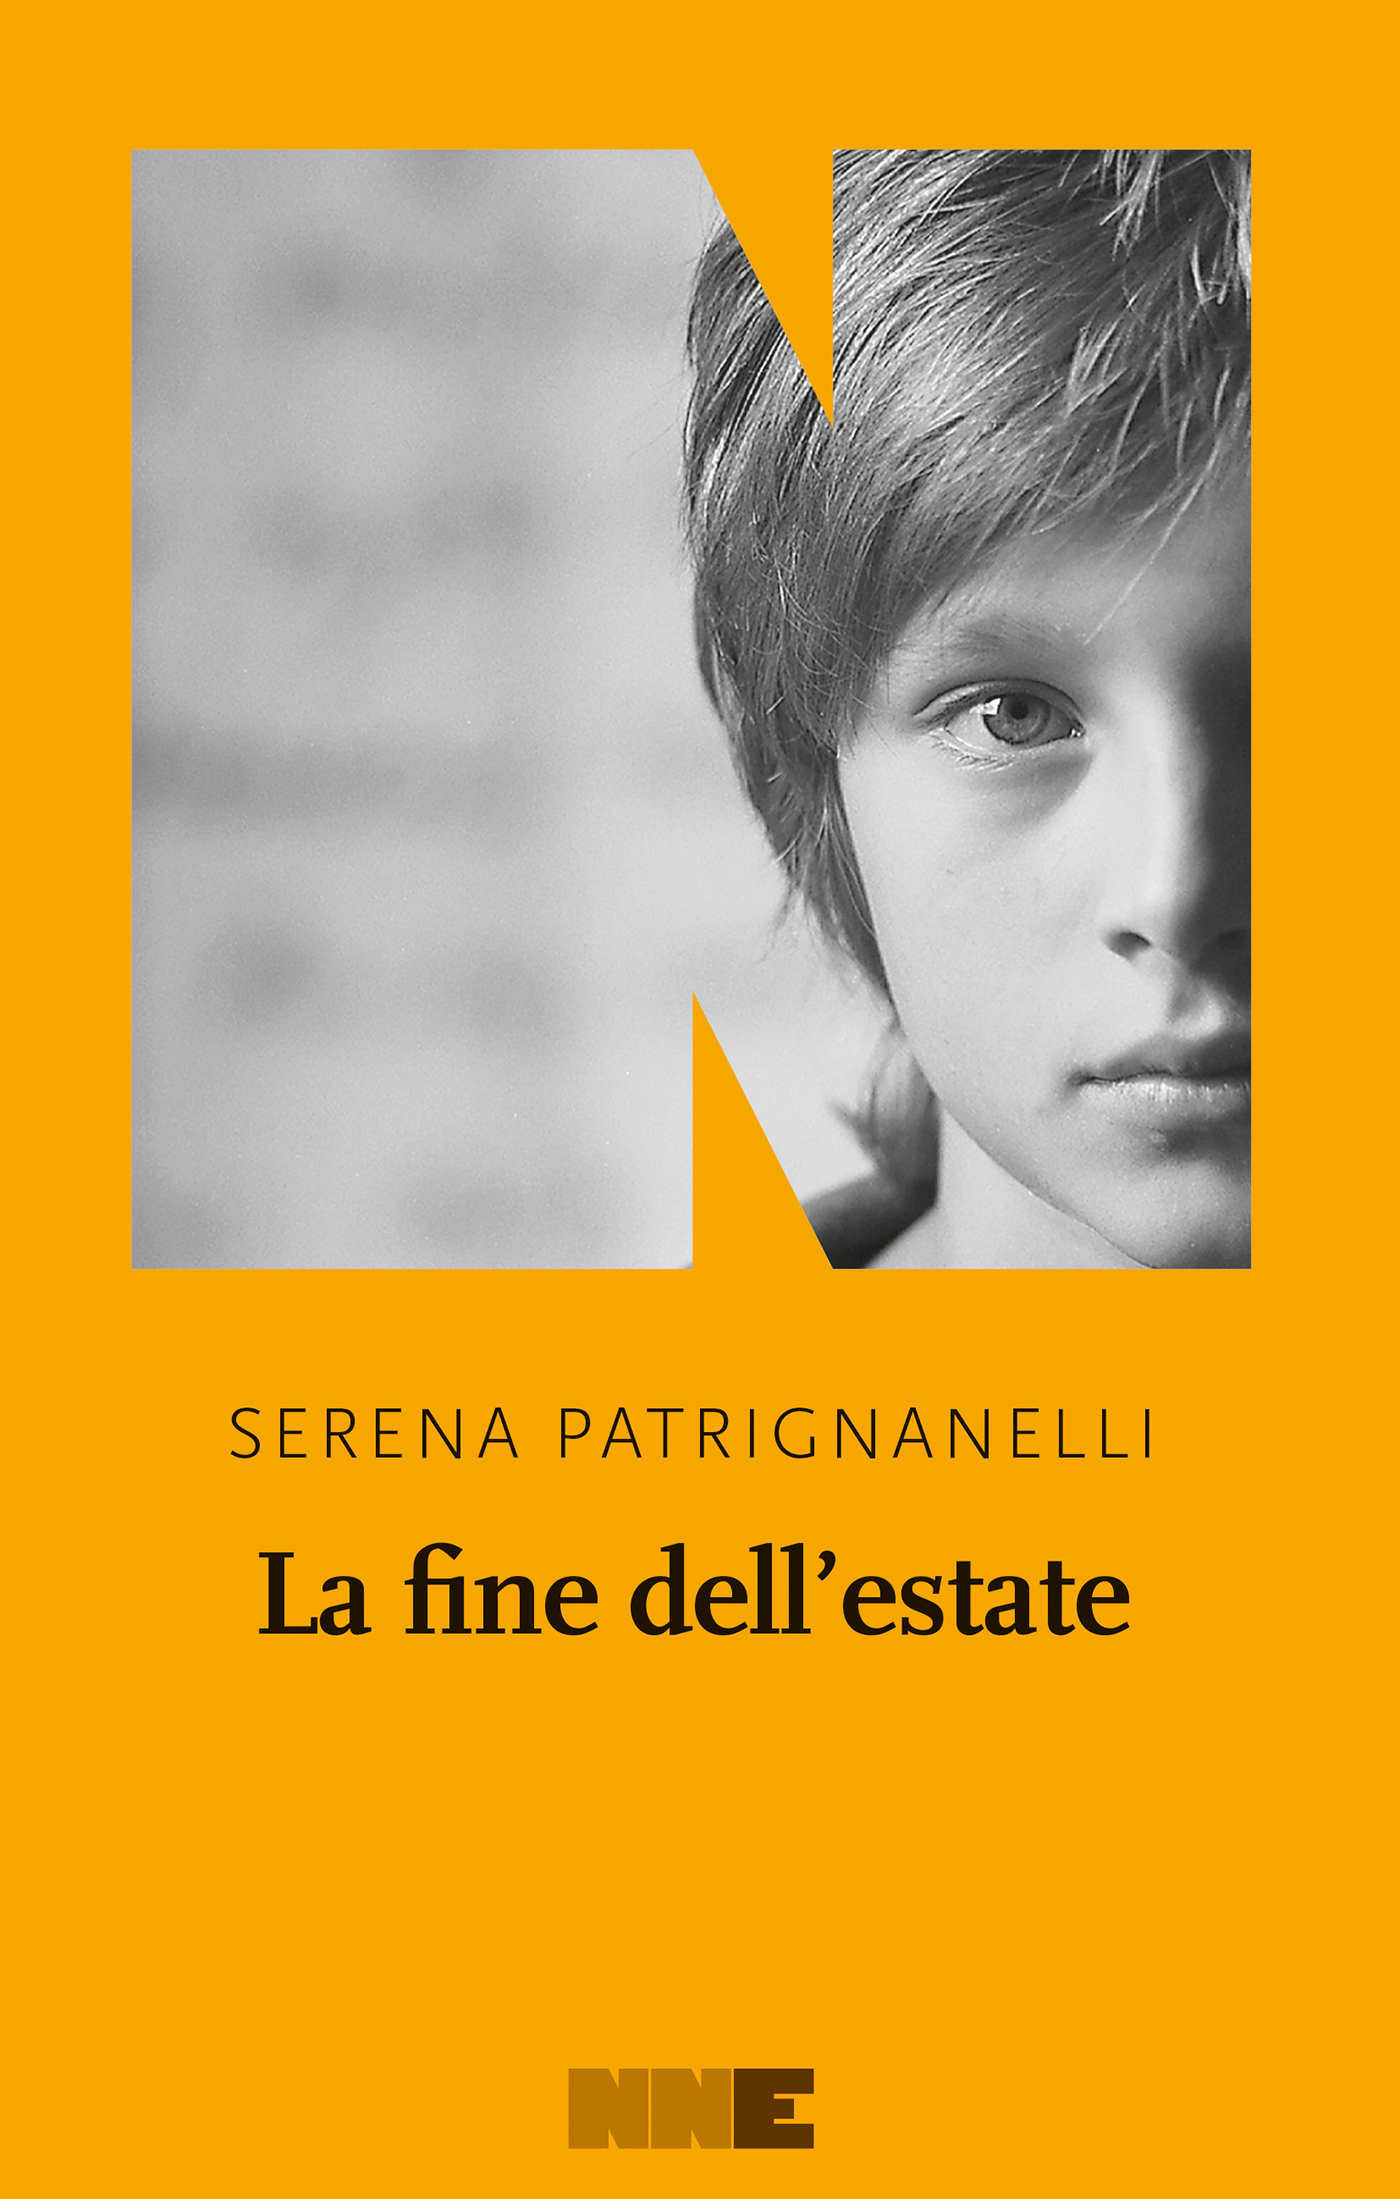 Cover_Patrignanelli_web